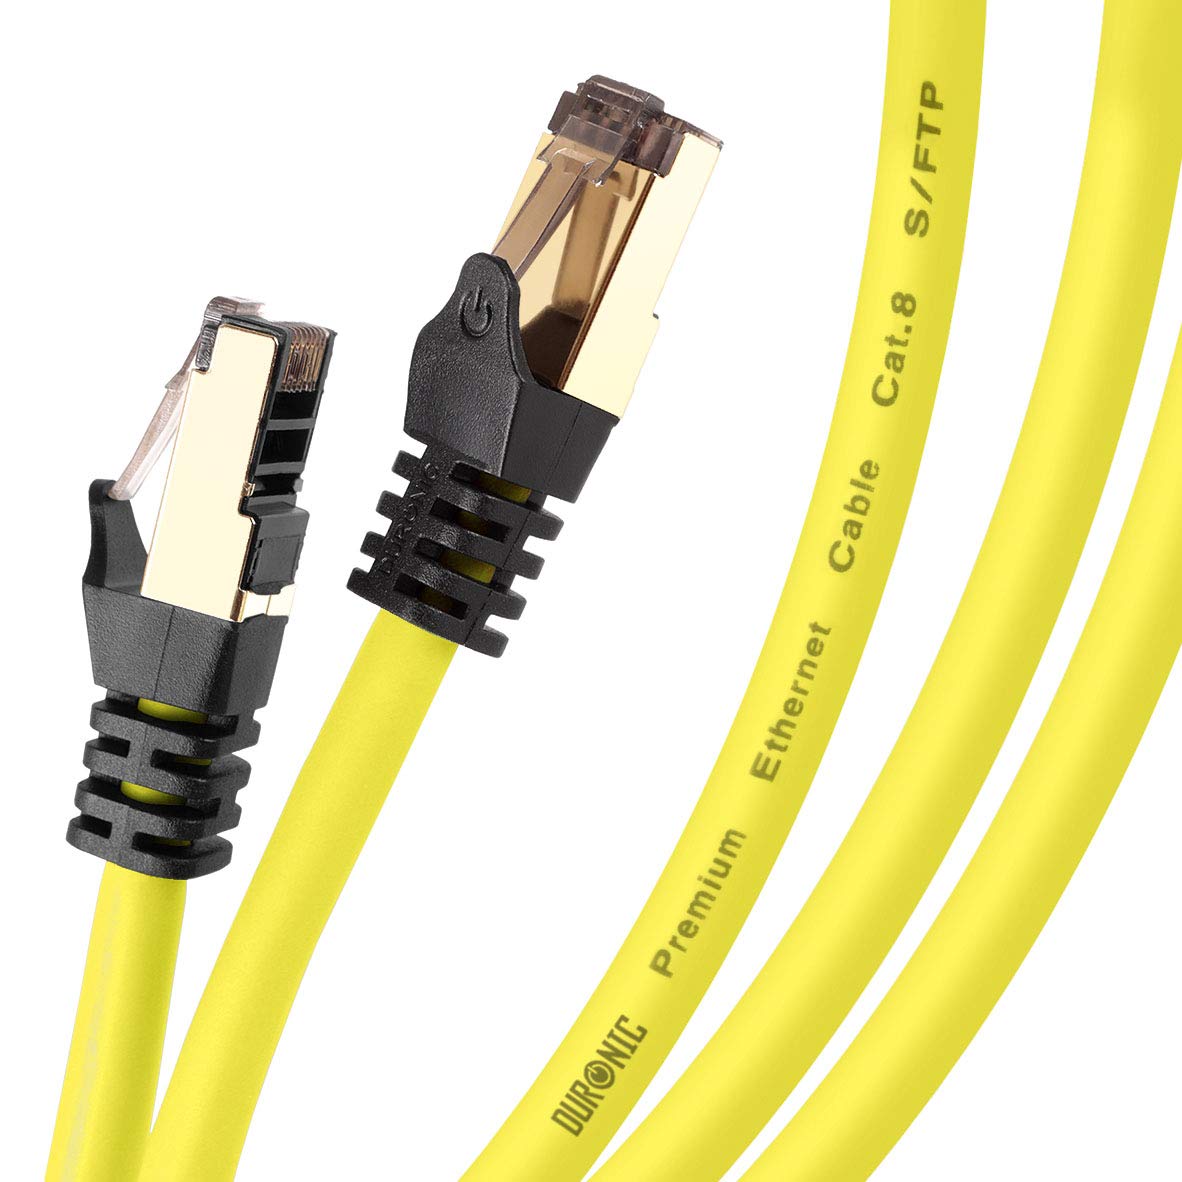 Duronic OE 1.5M CAT8 Cable de ethernet, Trenzado de los Pares Interno Y Conectores  RJ45, Ancho de Banda hasta 2GHz/2000MHz, Color Naranja y Acabado Oro